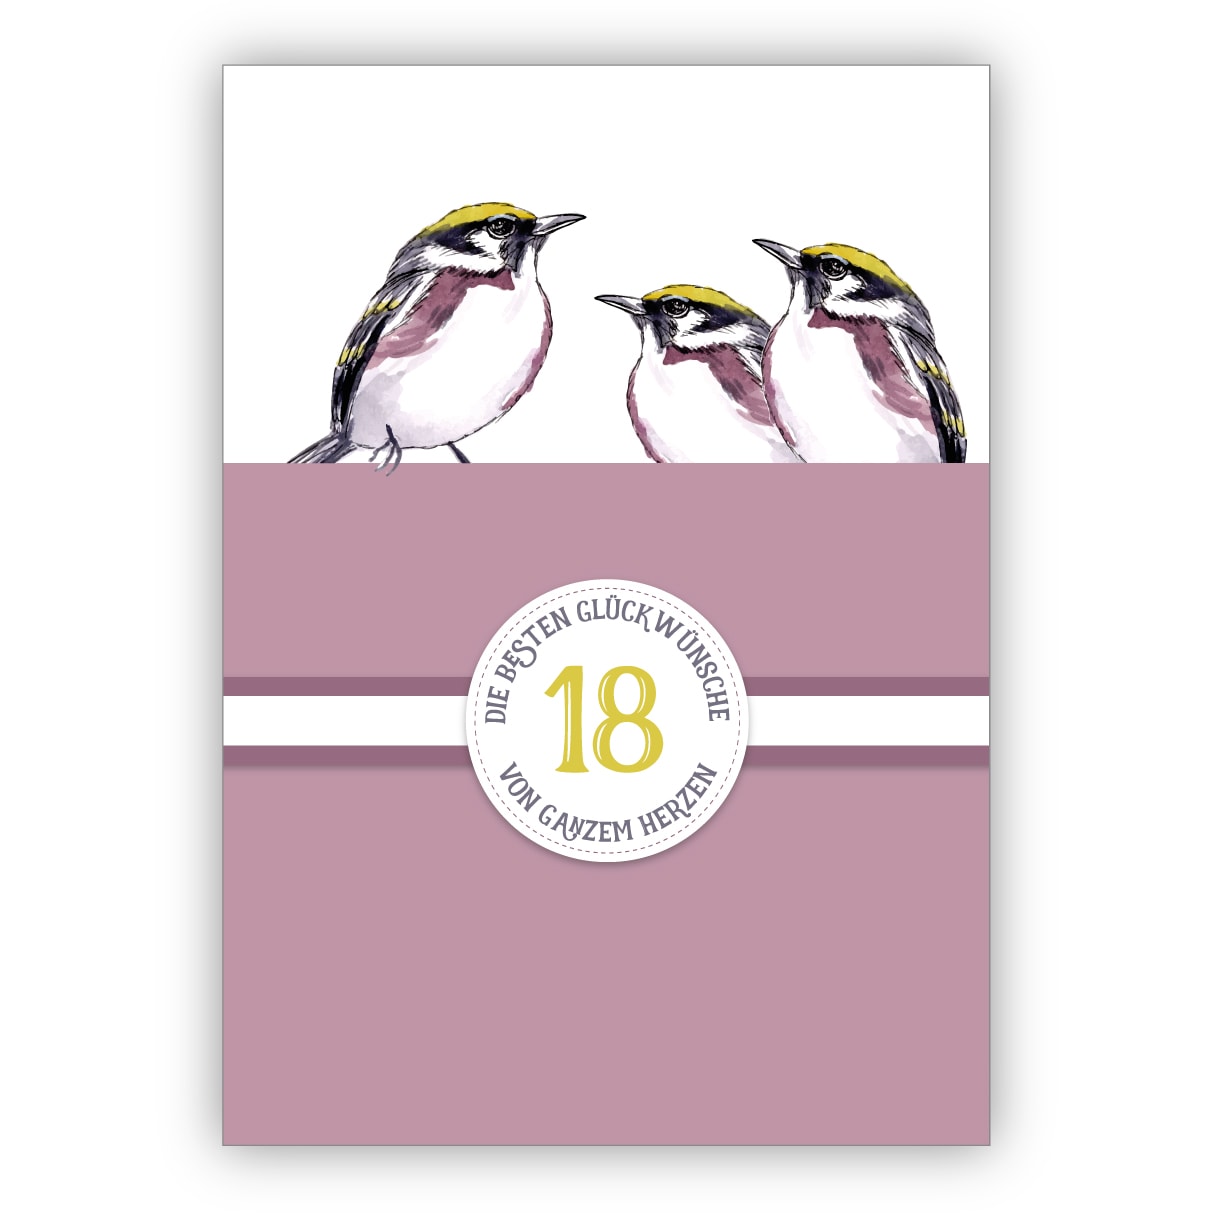 Tolle Klassische Geburtstagskarte Zum 18 Geburtstag Oder Zur Turkis Hochzeit 18 Jahre Ehe Jubilaum Mit Vogeln In Lila 18 Die Besten Gluckwunsche